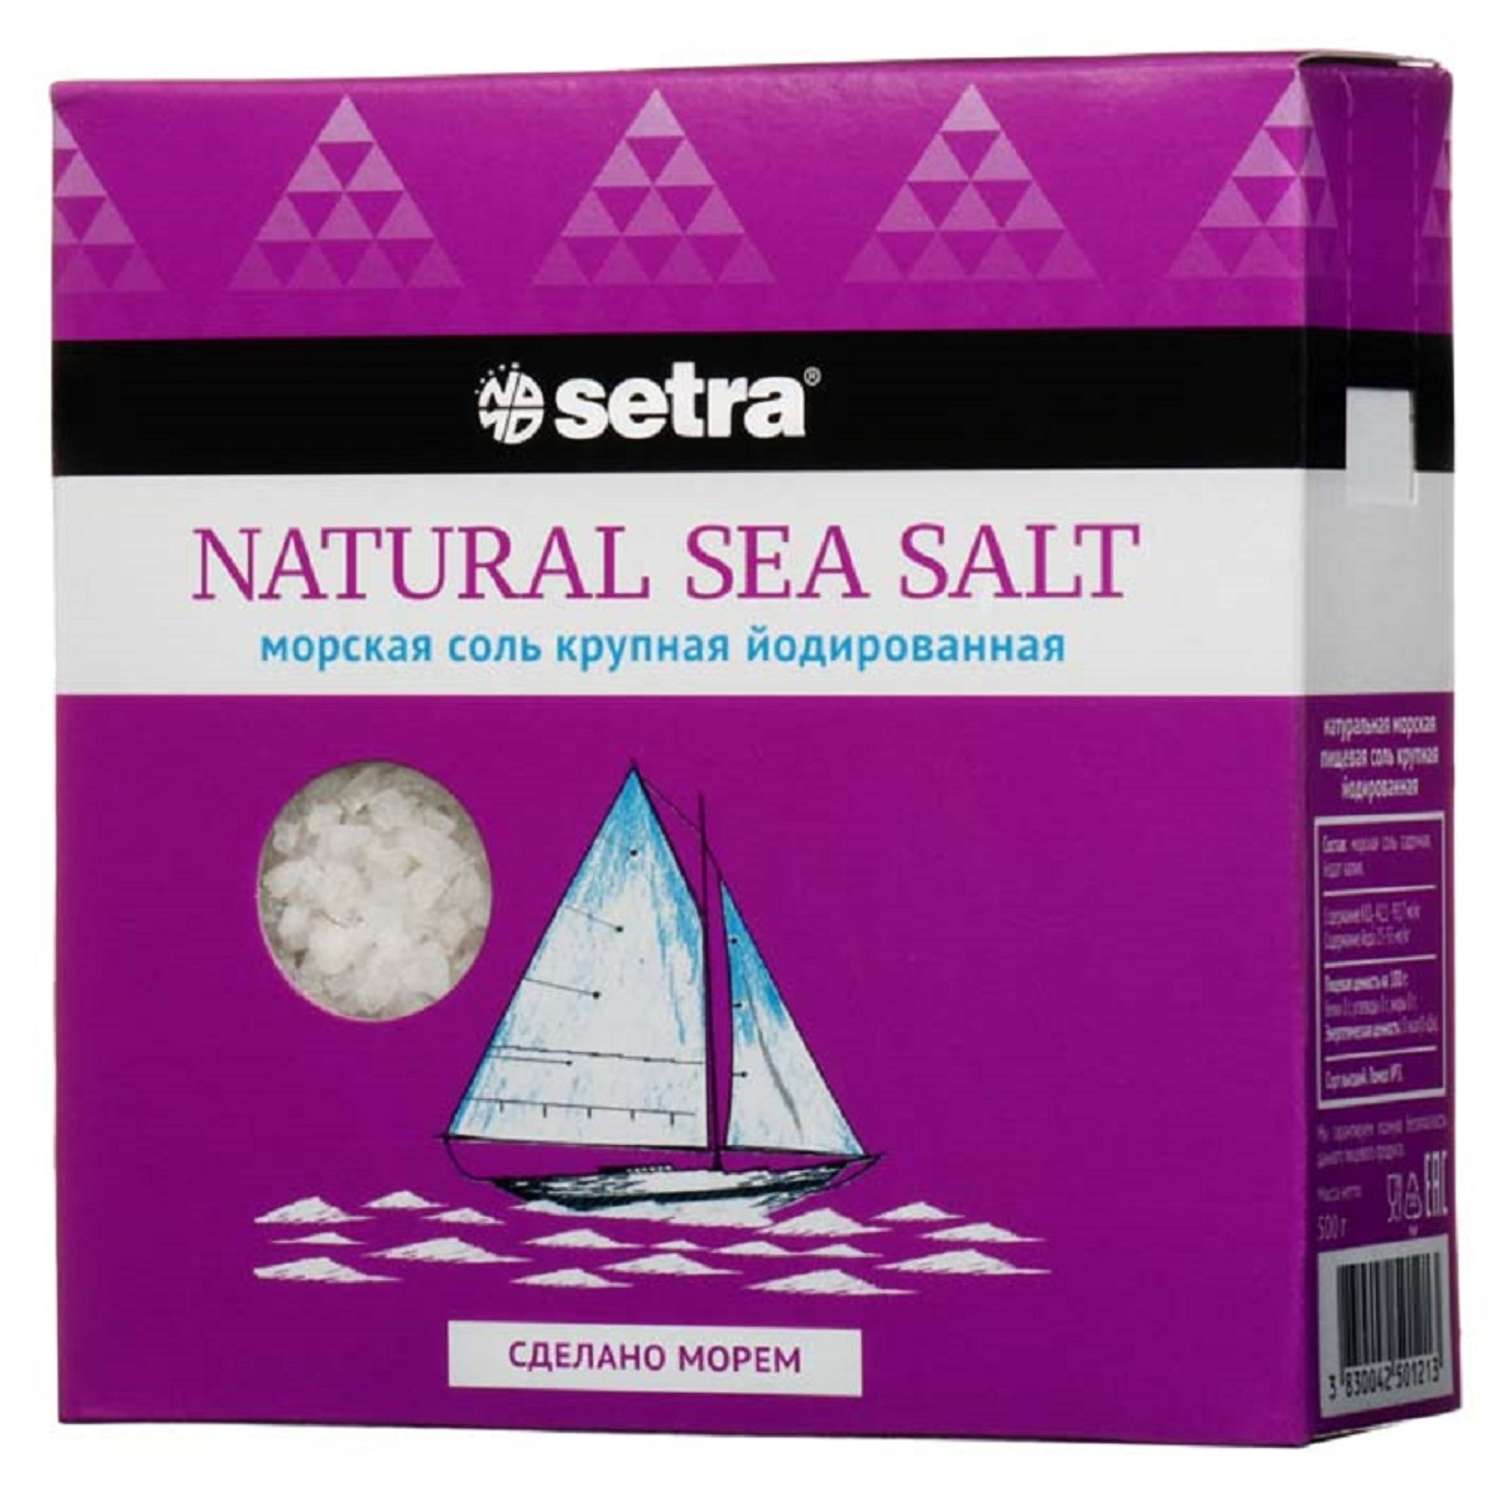 Соль Setra морская крупная йодированная помол №3 пачка 500 г. - фото 1